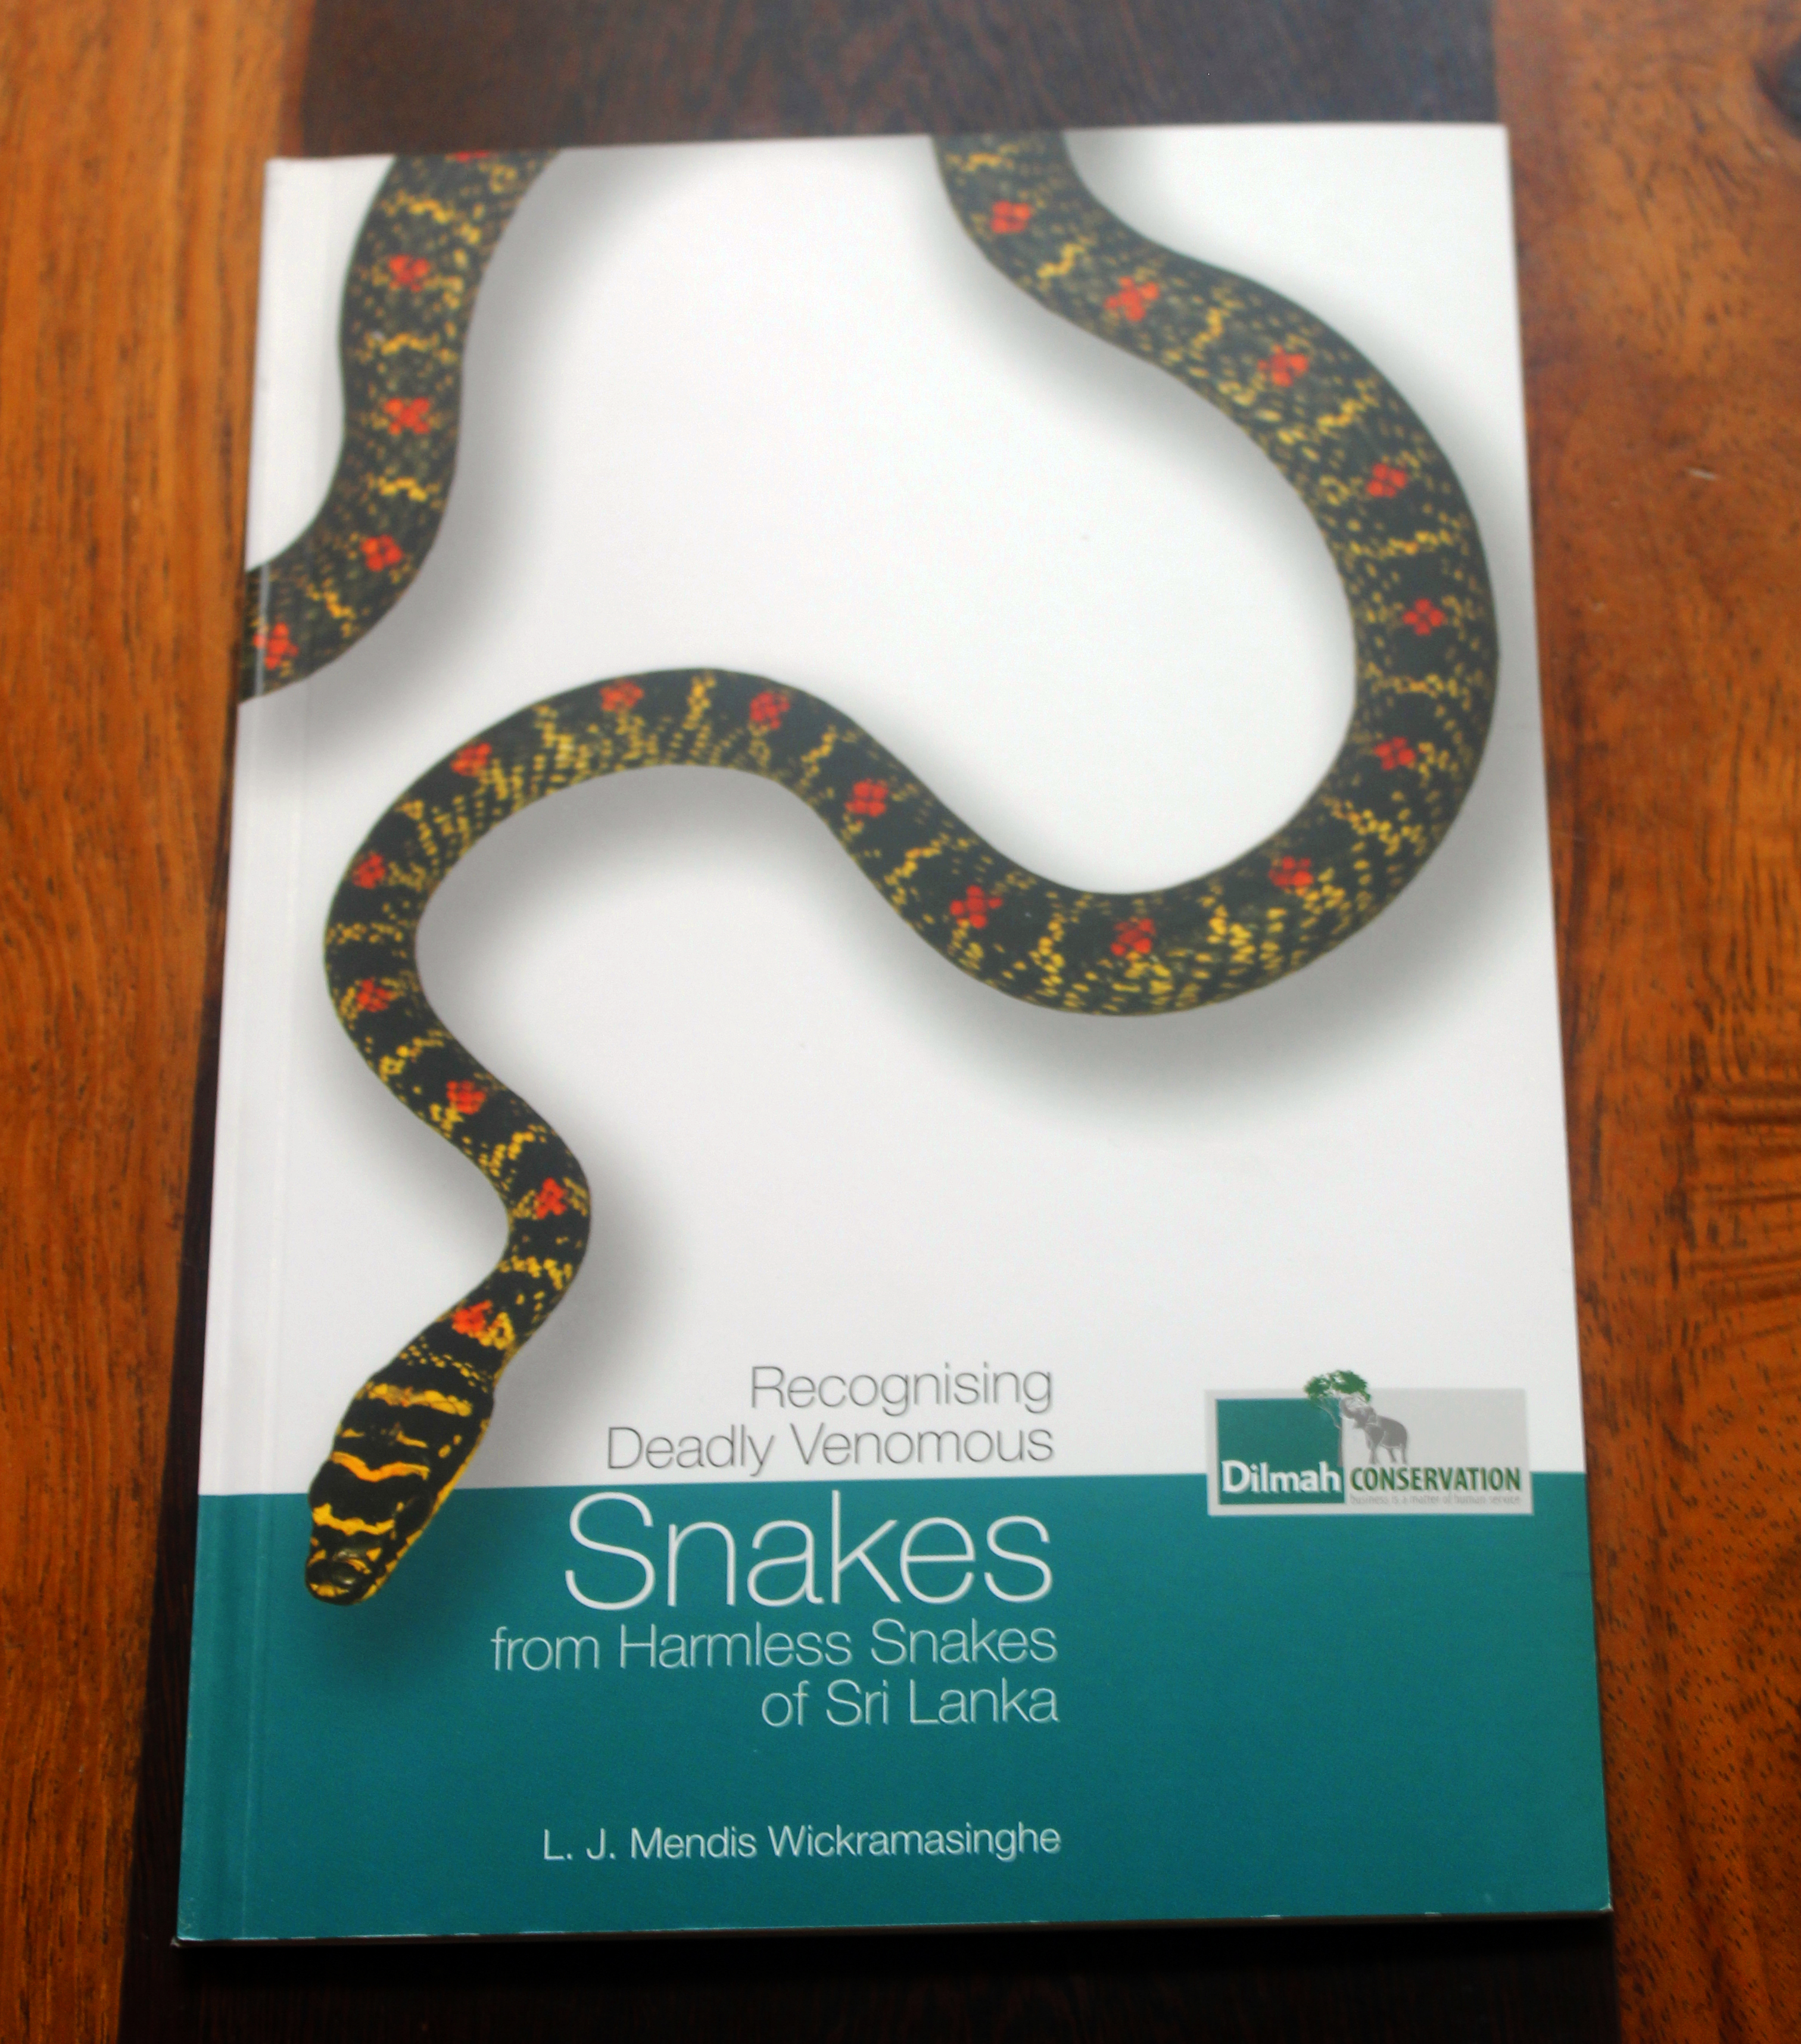 Recognising Deadly Venomous Snakes from Harmless Snakes of Sri Lanka